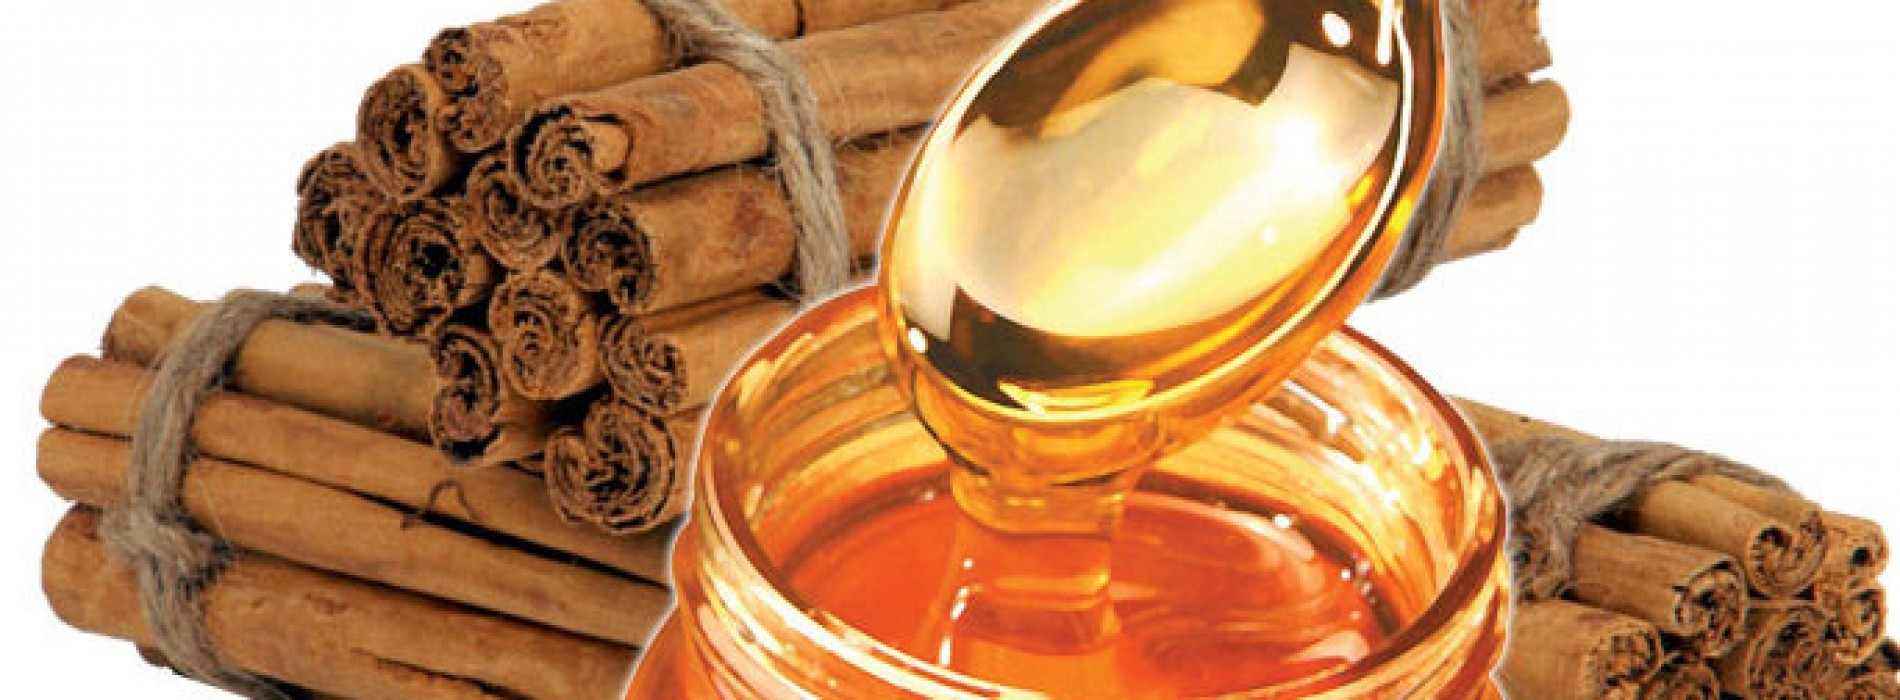 Honing met kaneel geneest de meeste ziekten